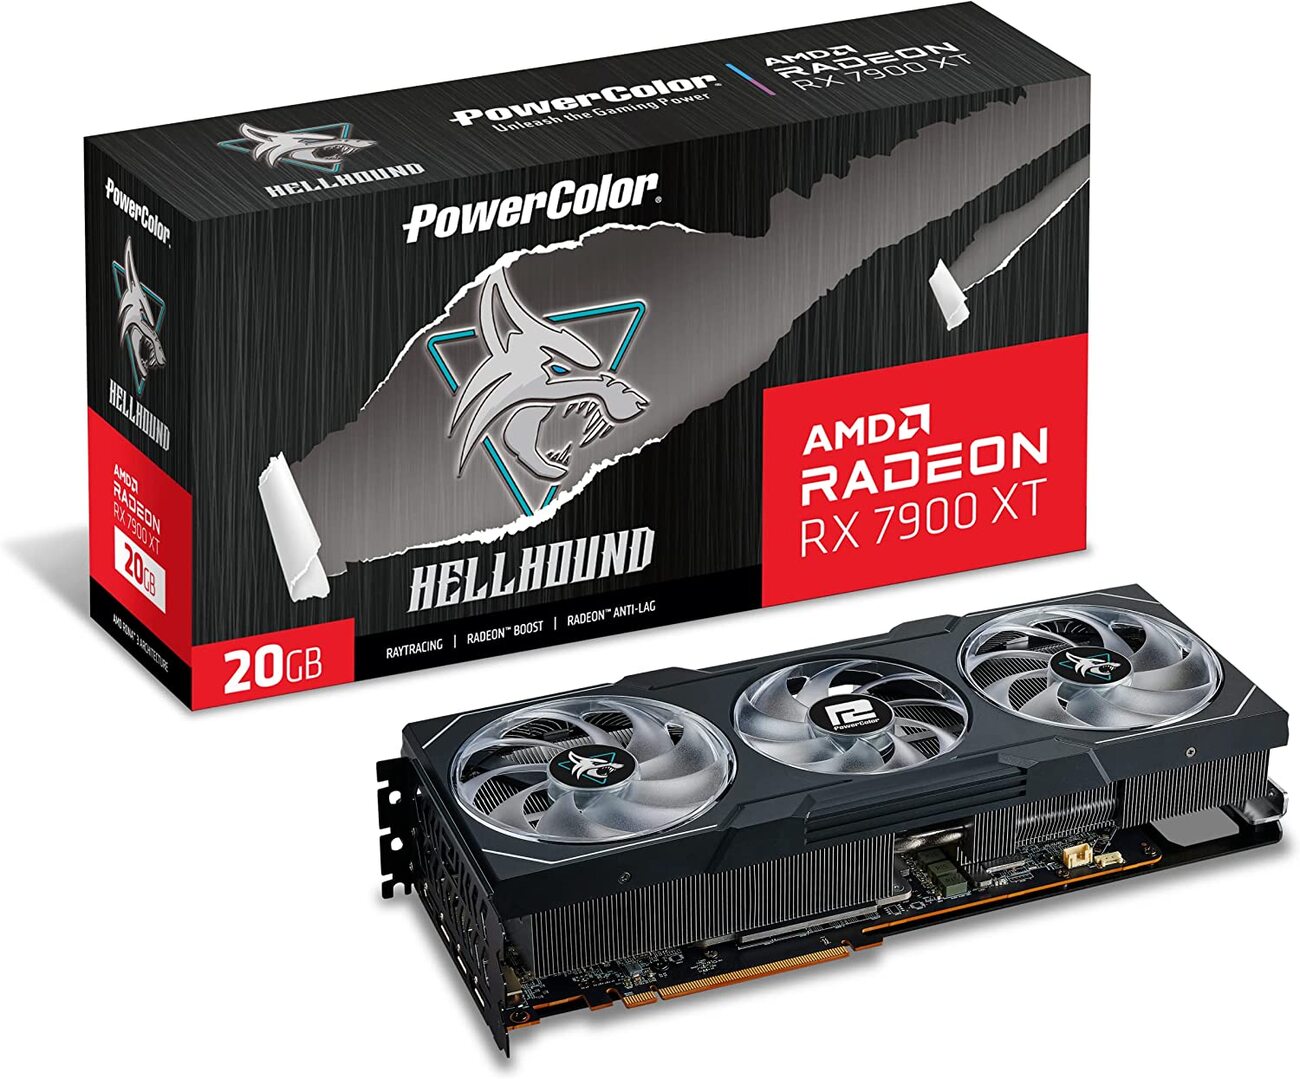 PowerColor AMD Radeon RX 7900 XT Hellhound 20GB GDDR6